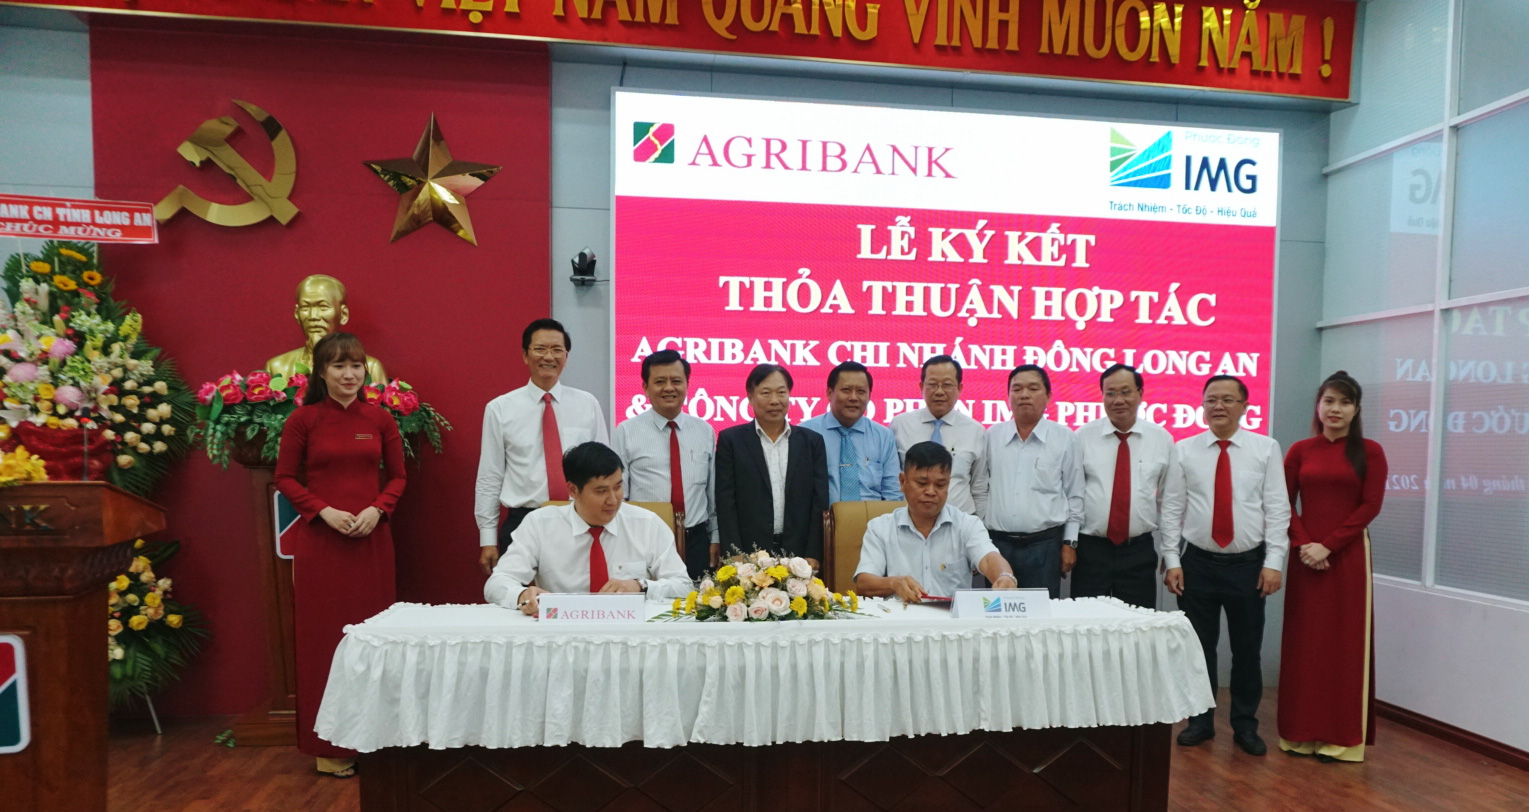 Agribank Chi nhánh Đông Long An ký kết thỏa thuận hợp tác toàn diện với Công ty cổ phần IMG Phước Đông. - Ảnh 1.